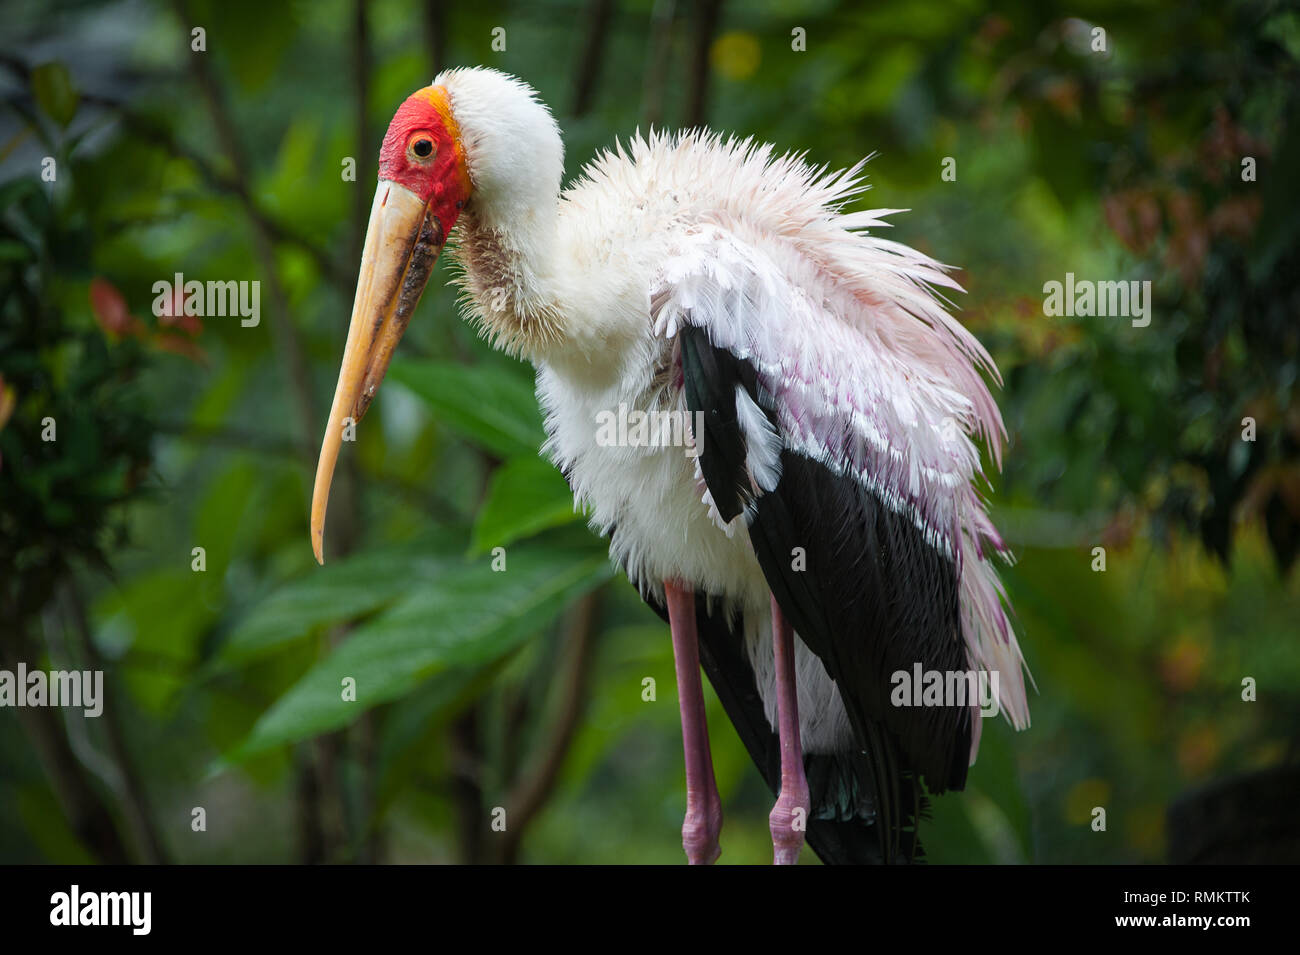 Portrait of a yellow-billed stork (Mycteria ibis), que l'on appelle parfois la cigogne en bois ou bois ibis. Banque D'Images